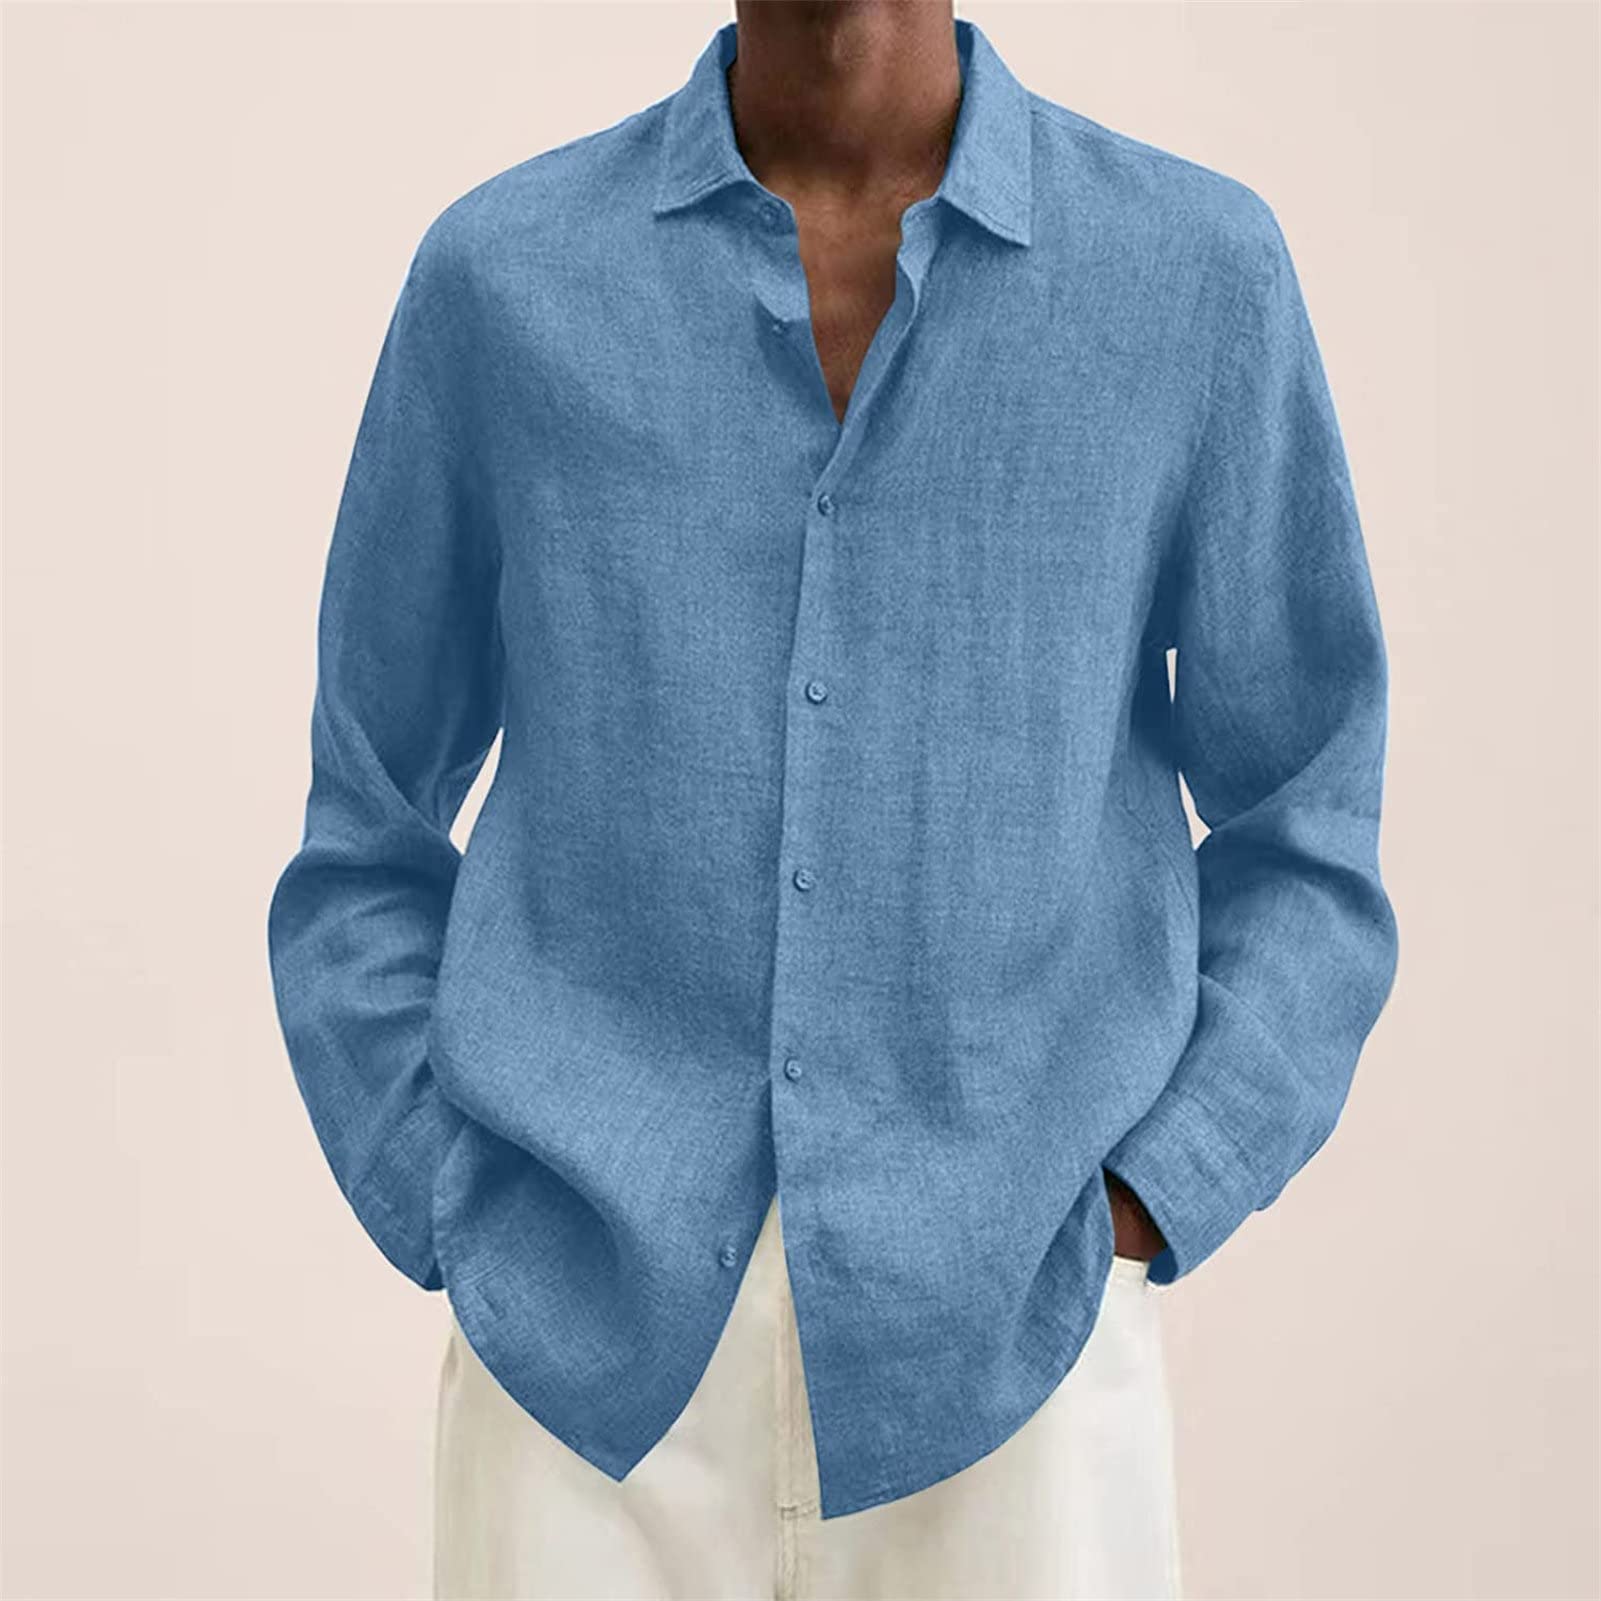 Men's Linen Button Down Shirts Casual Long Sleeve Summer Beach Shirt Tops Lightweight Solid Color Loose Fit Shirt (Light Blue,XX-Large)